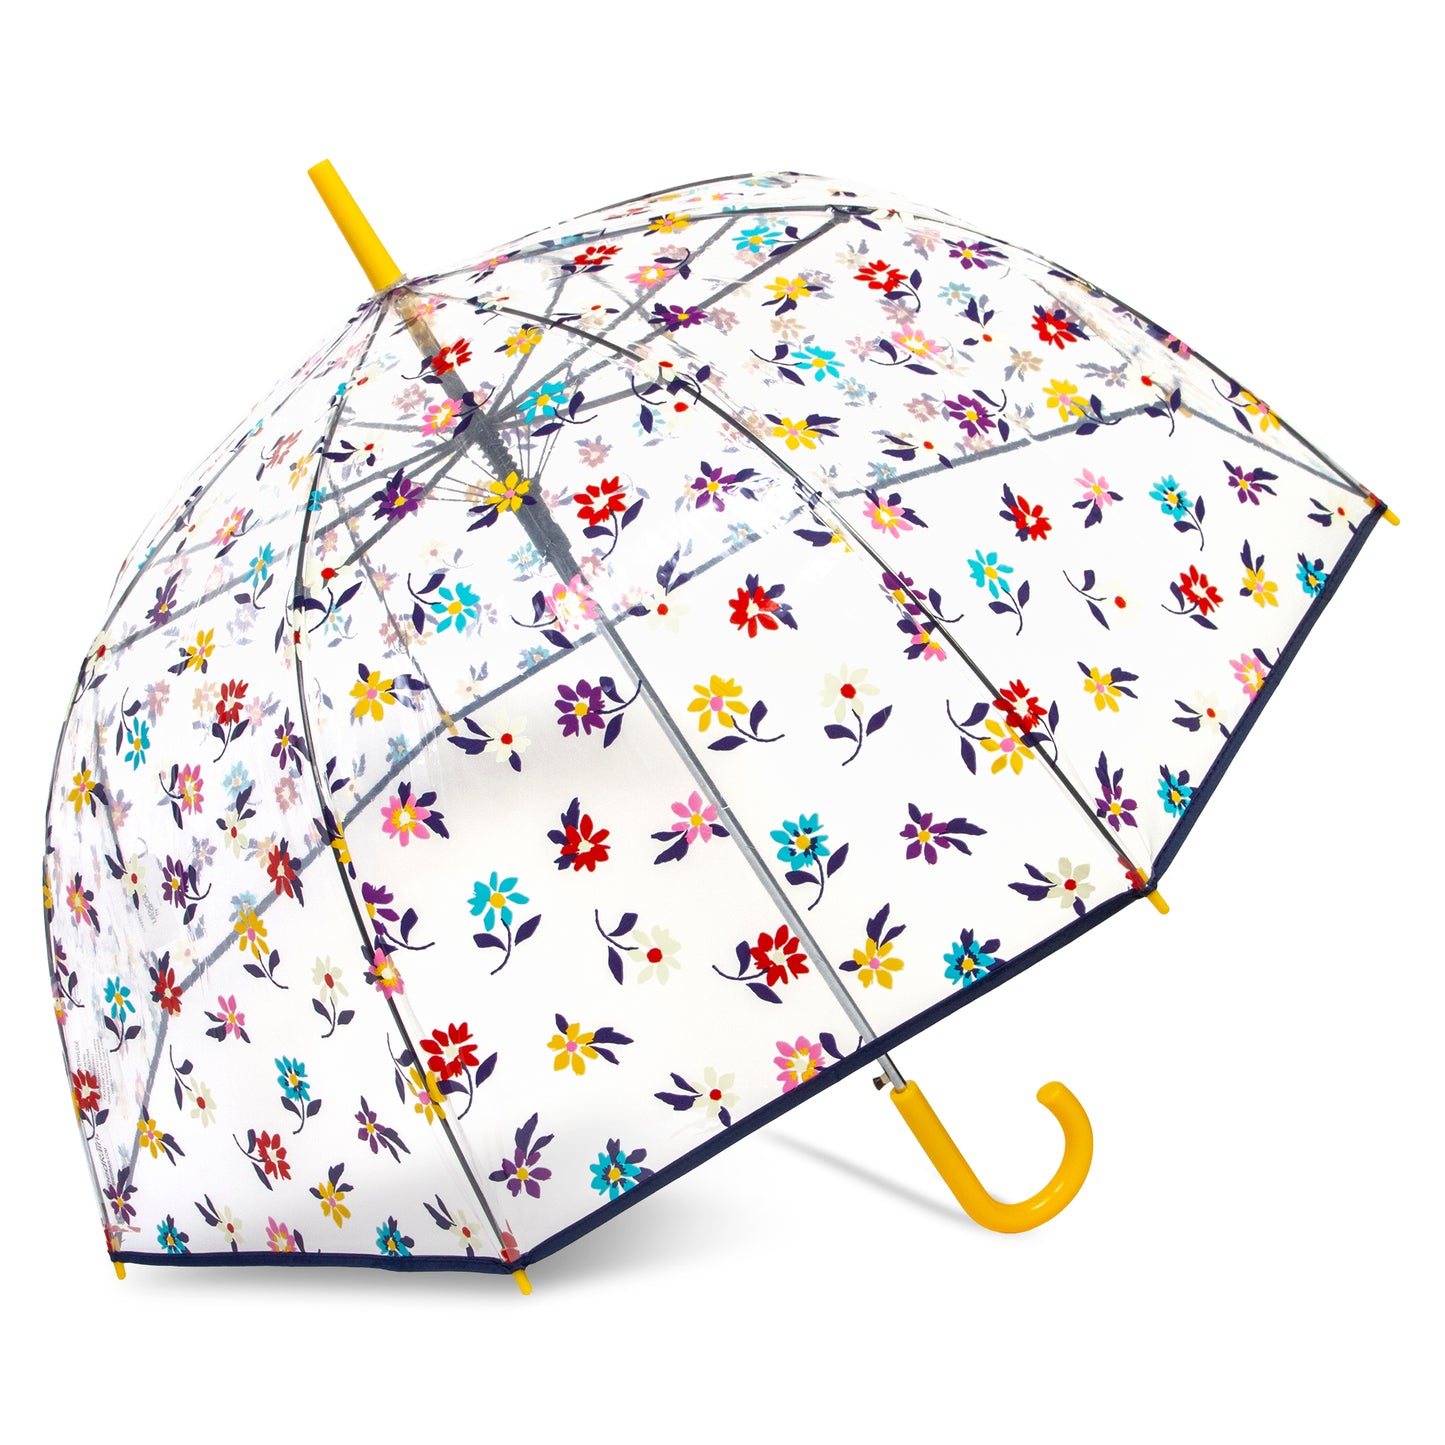 Auto Open 52" Arc Fashion Print Bubble Stick Umbrella